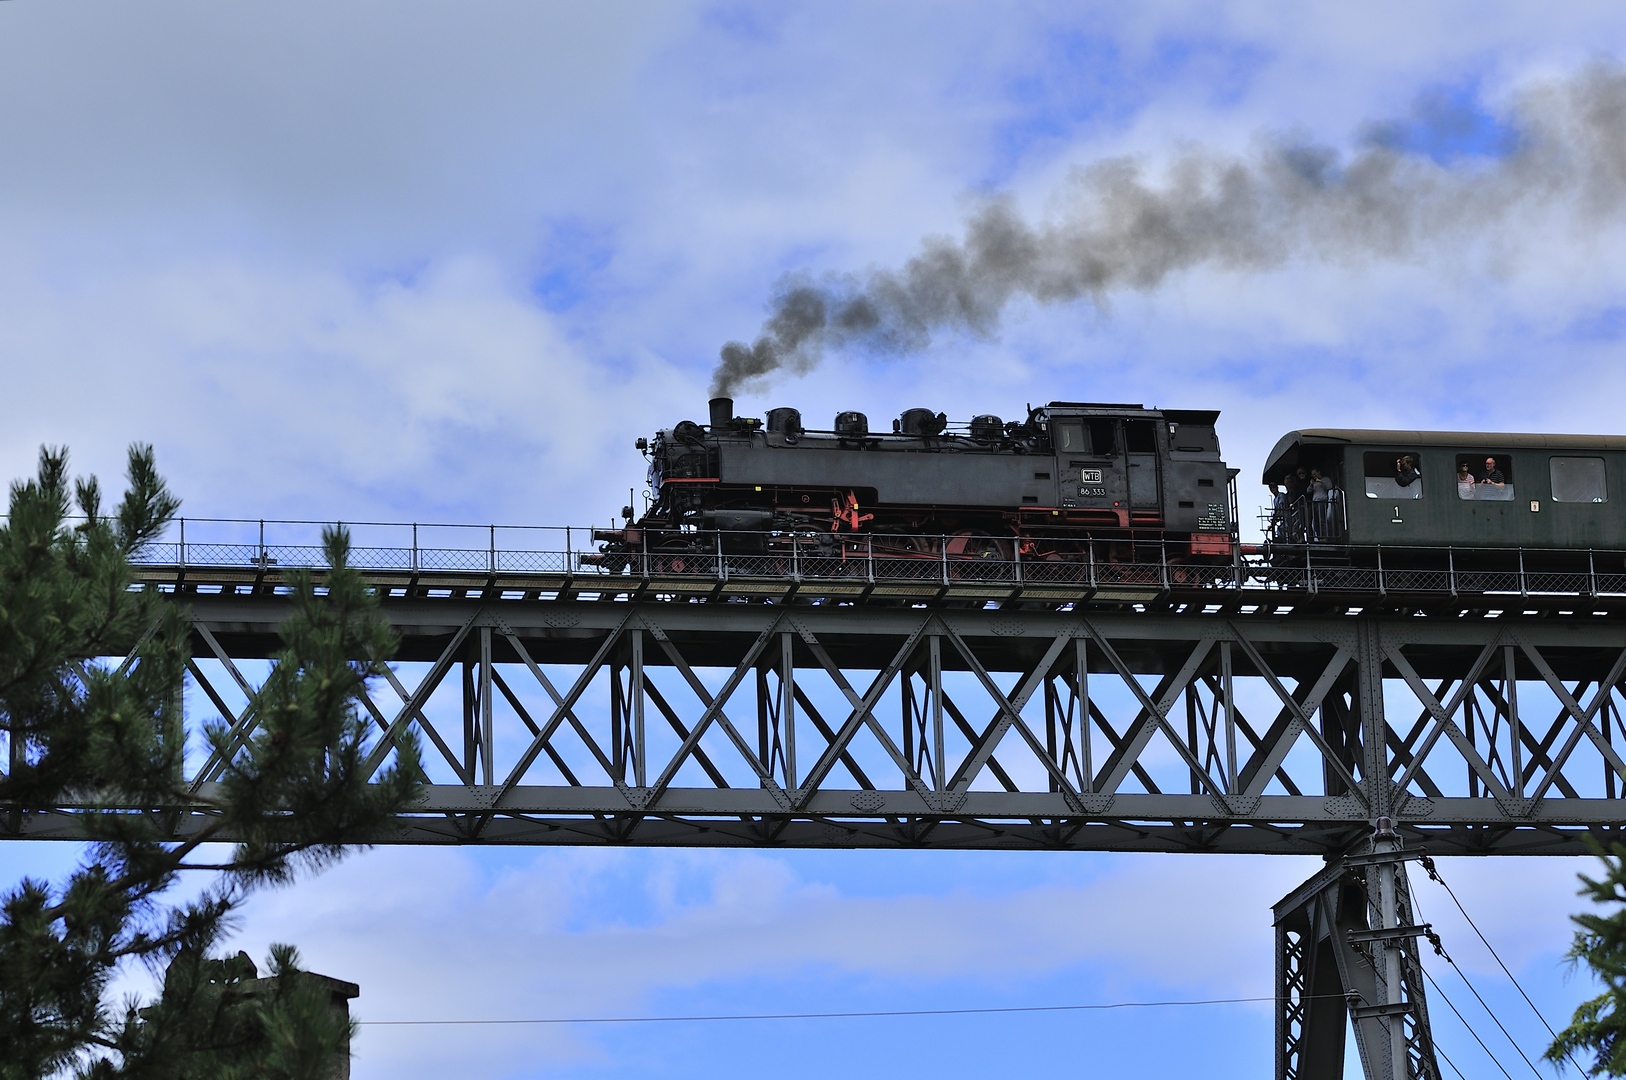 Die alte Dampf tschtsch Dampfeisenbahn